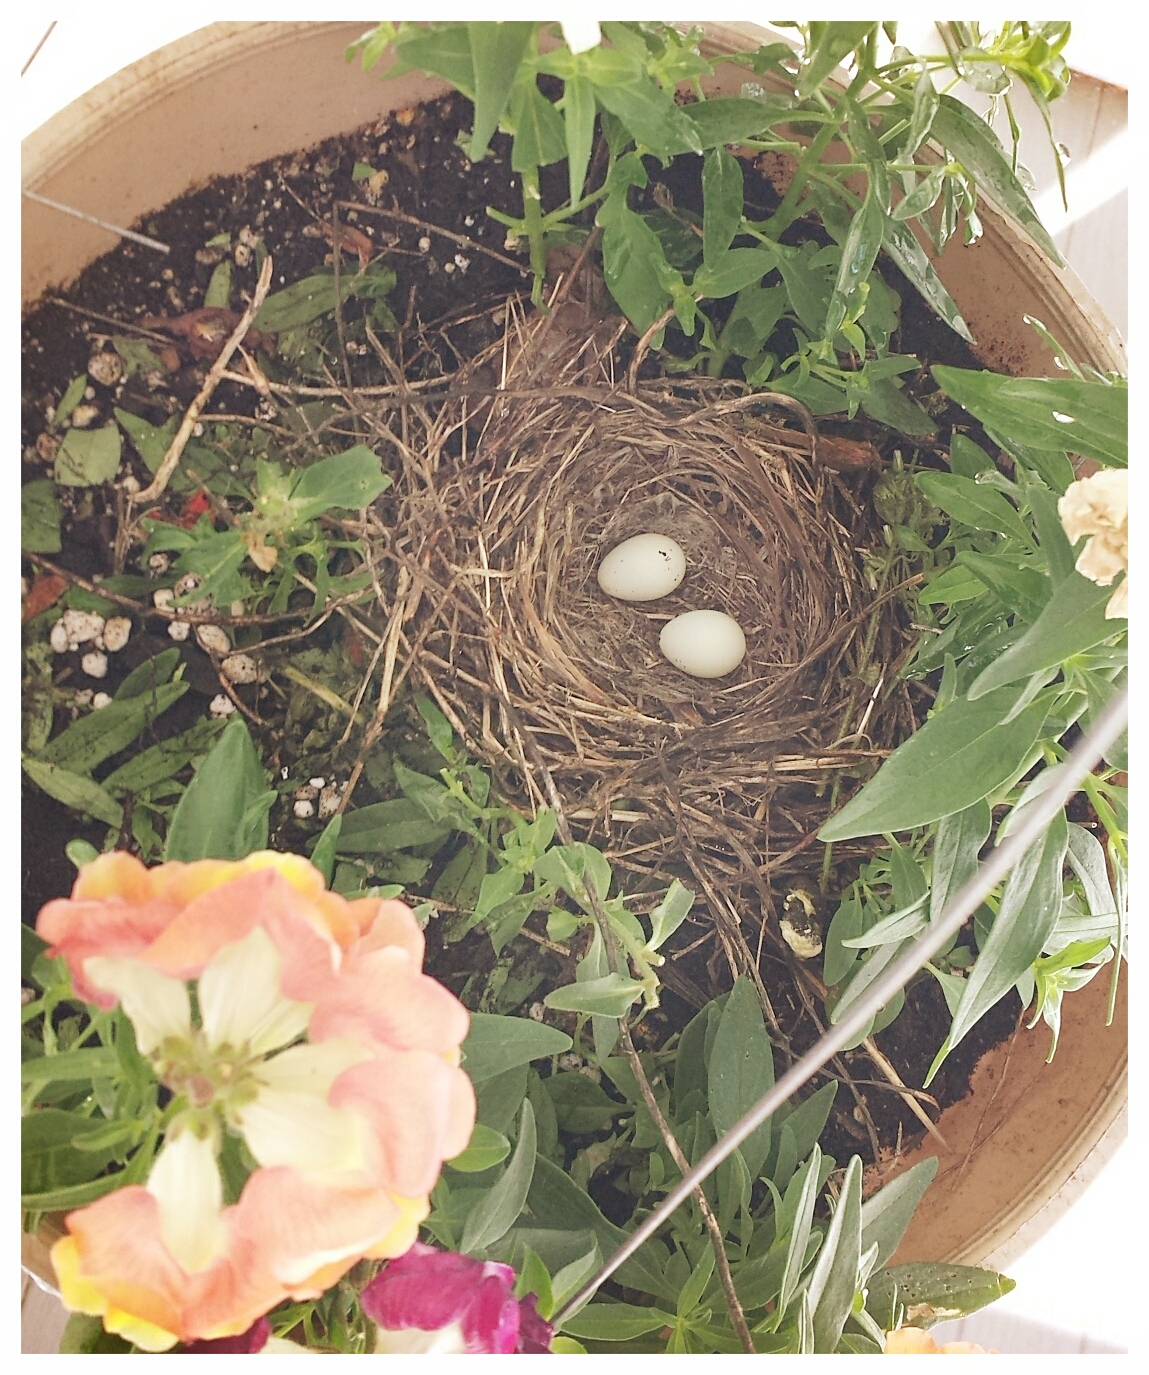 2017-06-02 house finch bird nest